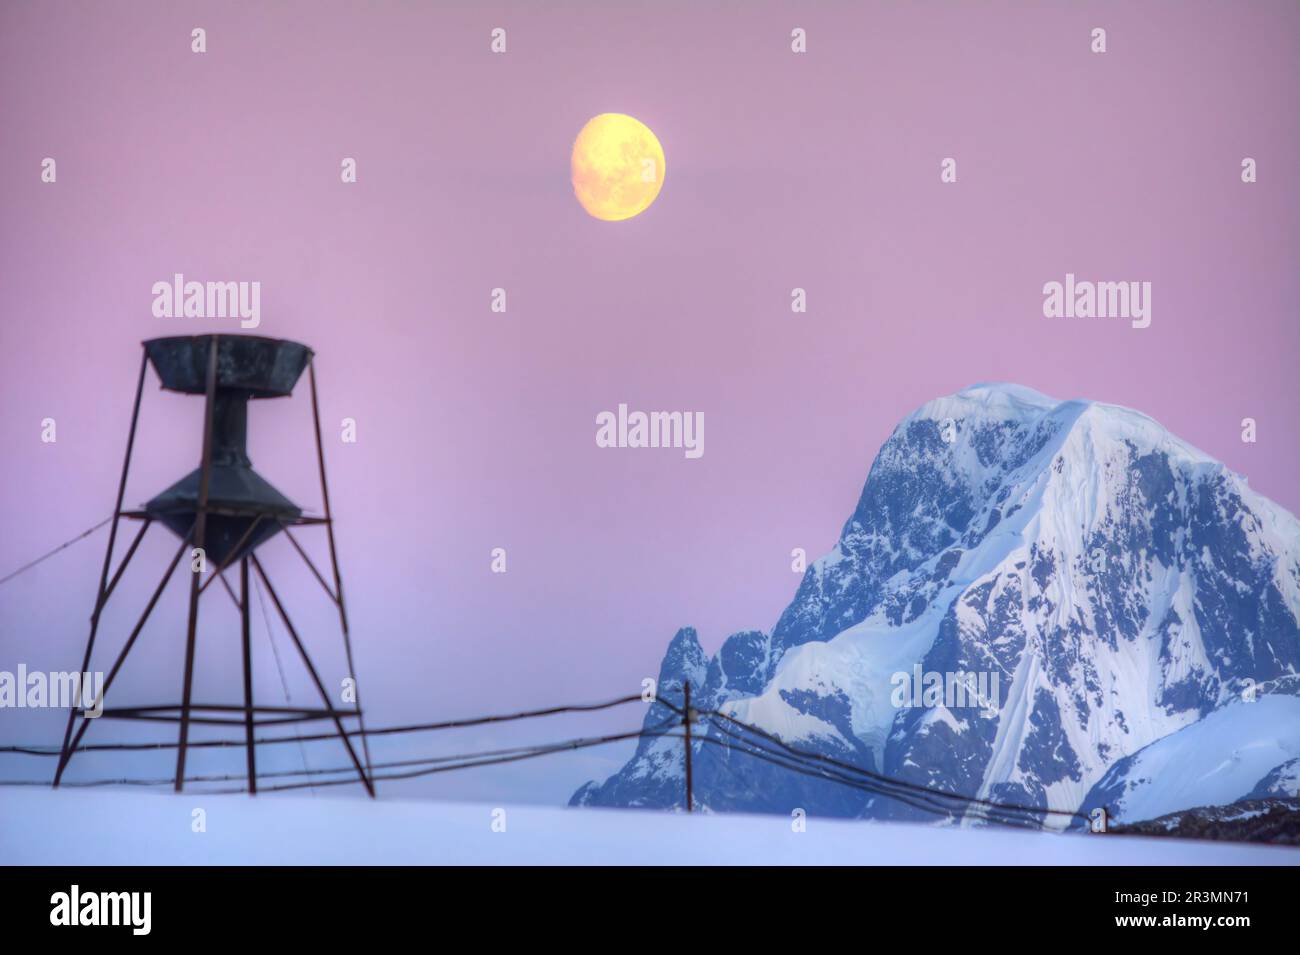 Ein alter Wasserturm in der Antarktis und der aufgehende Mond im Hintergrund Stockfoto